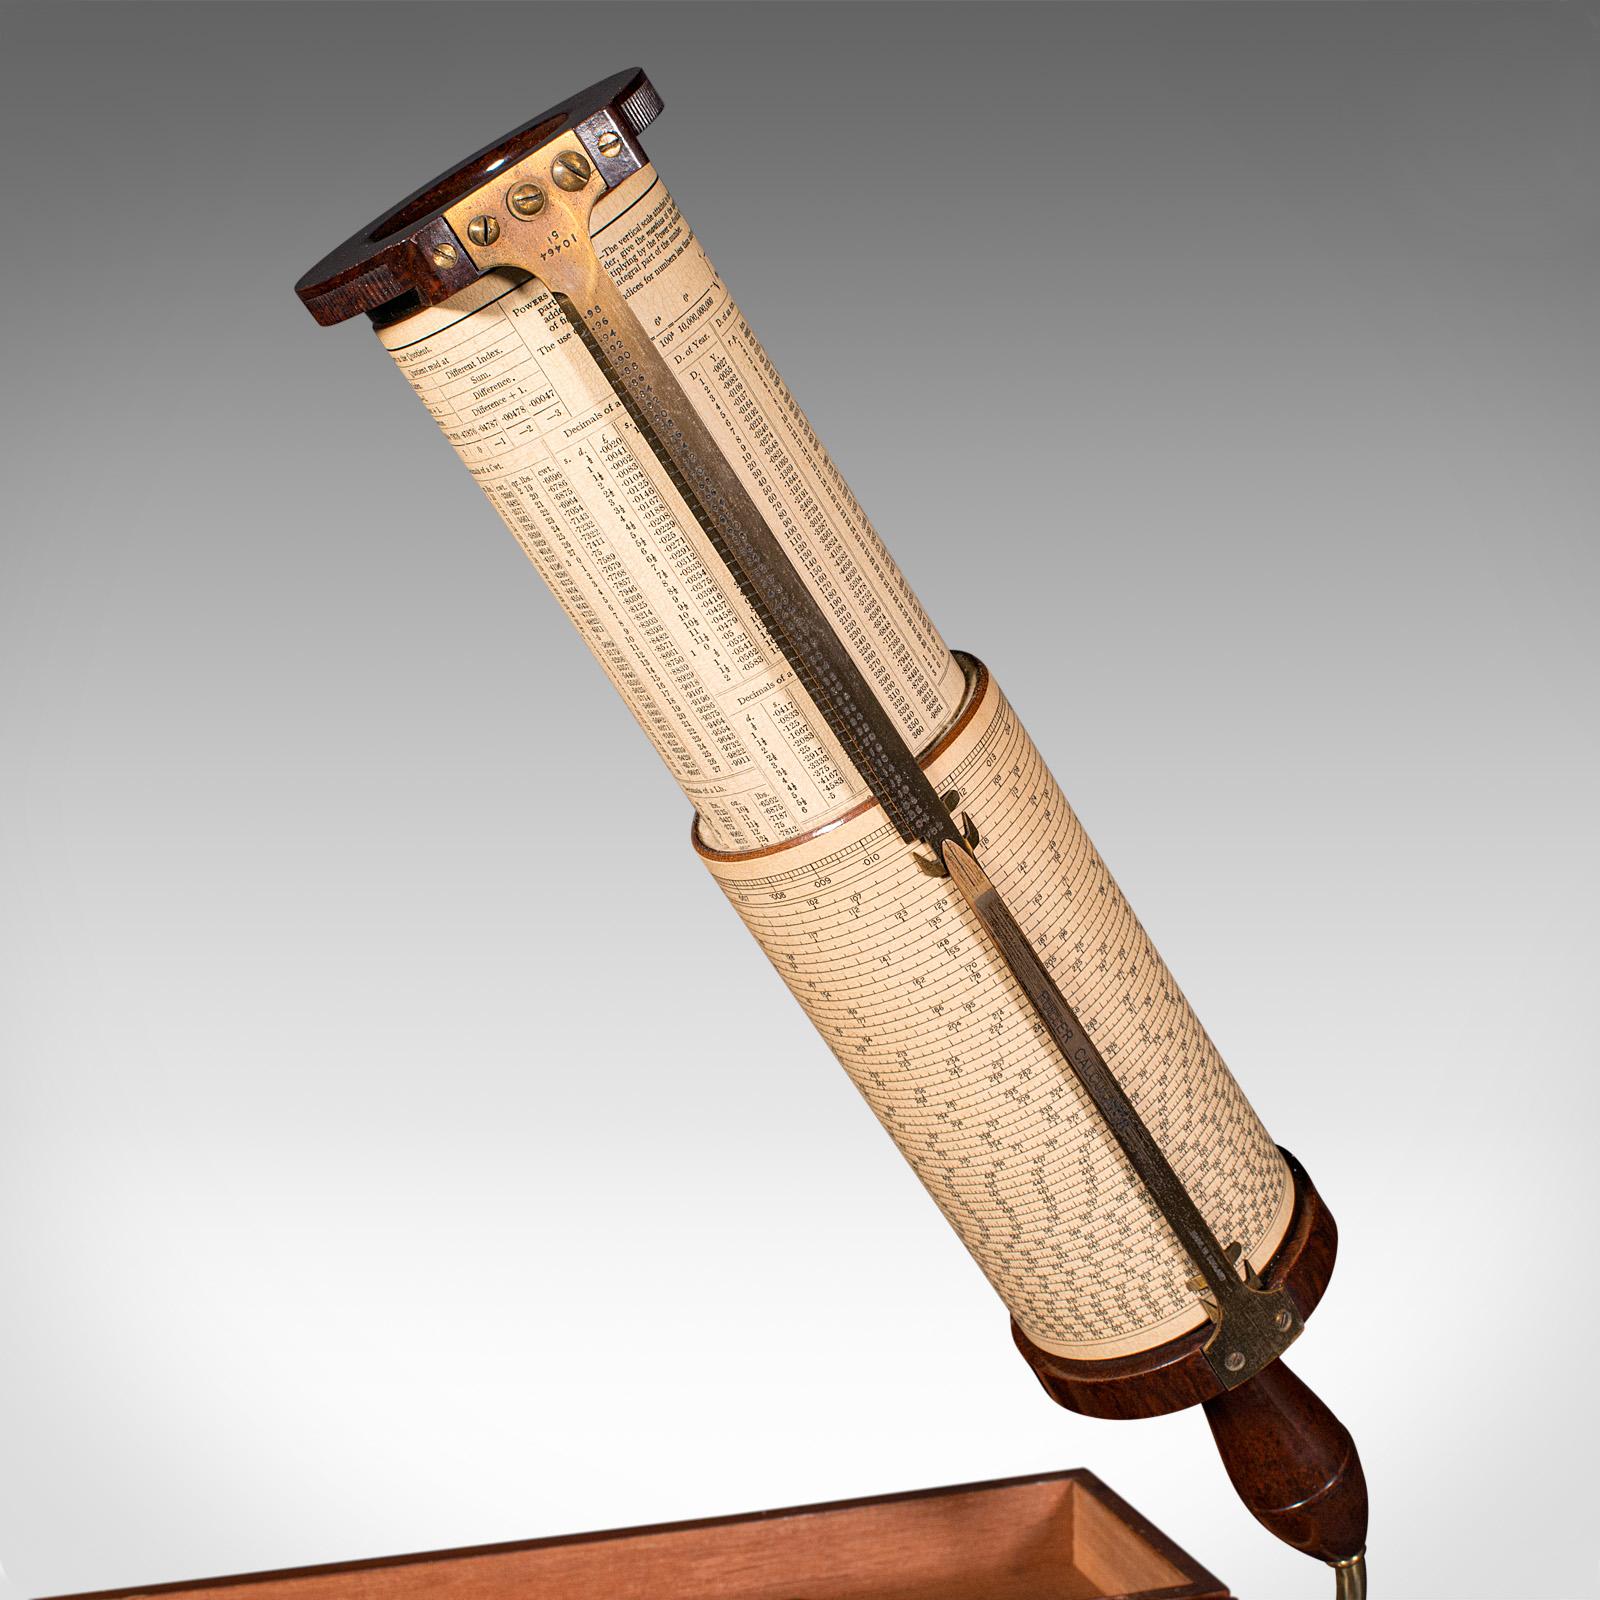 Dies ist ein Vintage Fuller's Calculator. Ein englisches mathematisches Instrument mit Bakelit- und Messinggehäuse von Stanley of London, aus der Mitte des 20. Jahrhunderts, um 1950.

Wunderschönes Beispiel für eine zylindrische Rechenmaschine
Zeigt